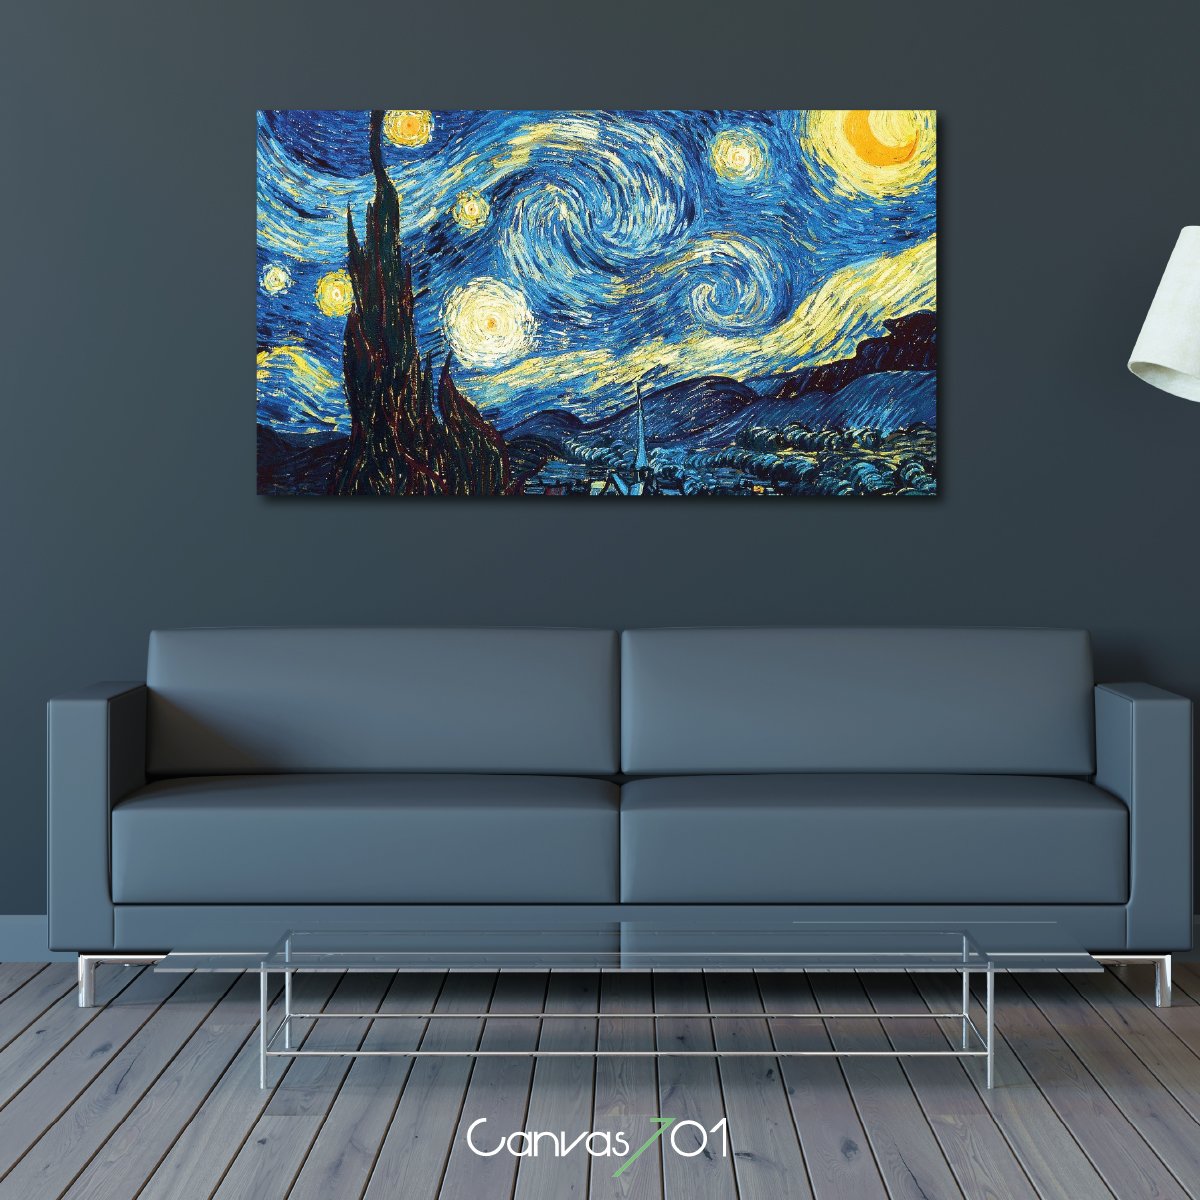 Market701 | Van Gogh Yıldızlı Gece Kanvas Tablo 